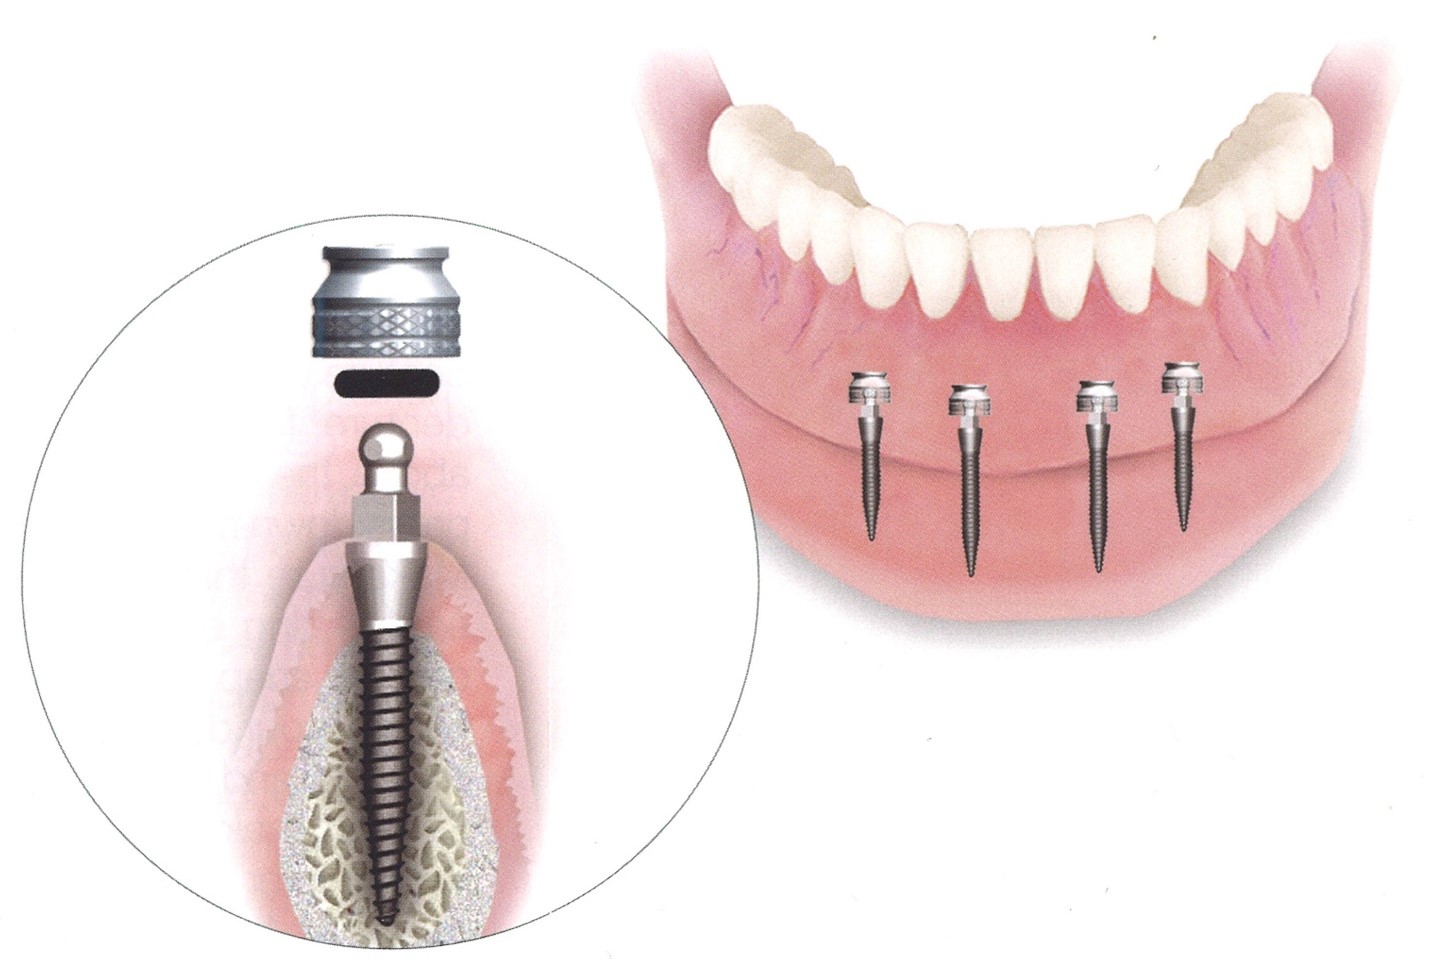 انواع ایمپلنت دندان، کدام روش برای شما مناسب تر است؟